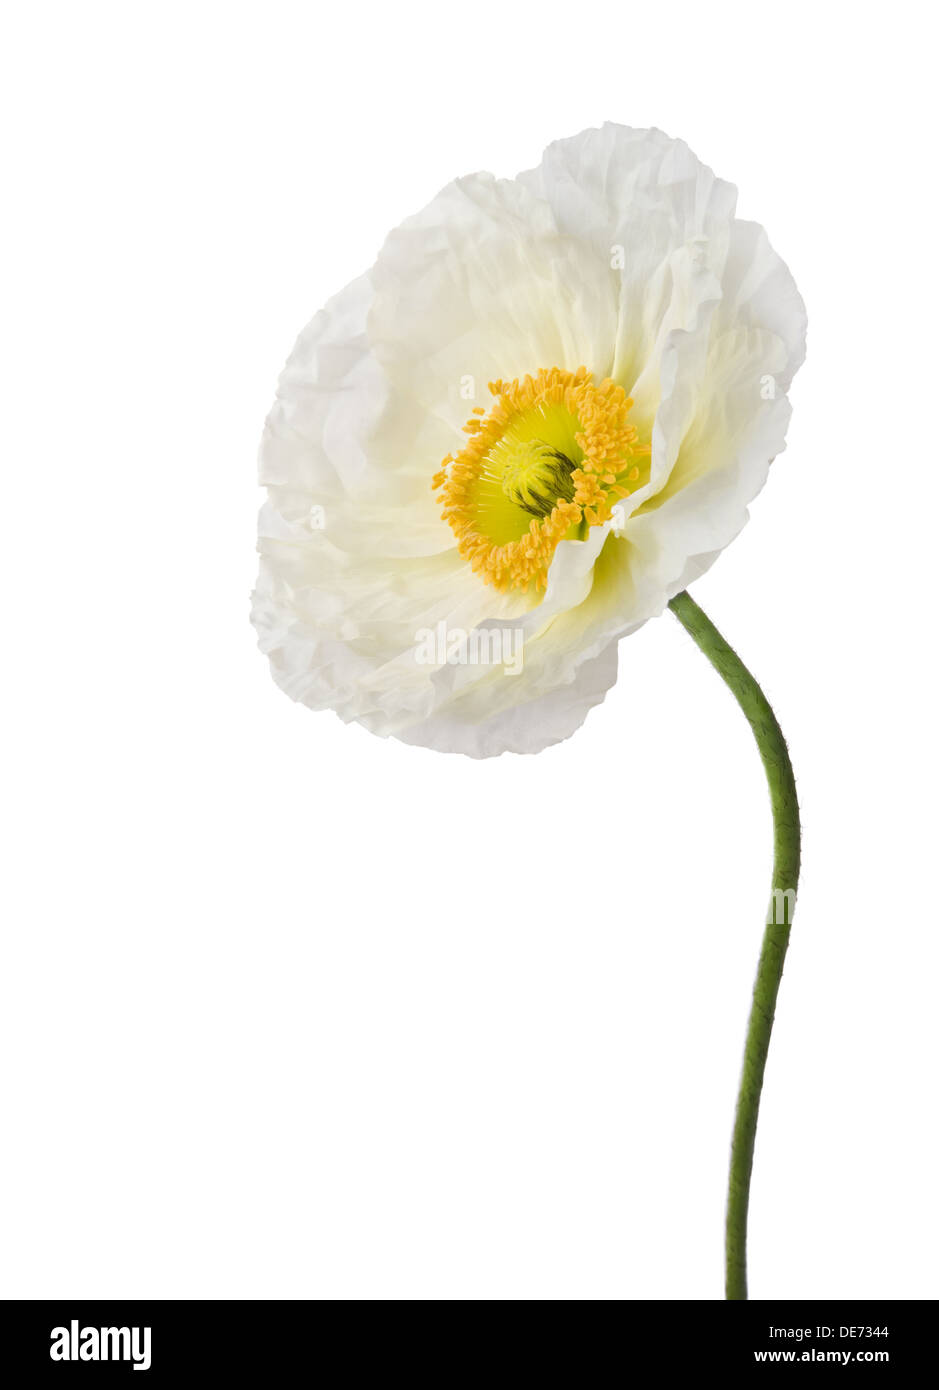 Single white poppy isolated on white background Stock Photo